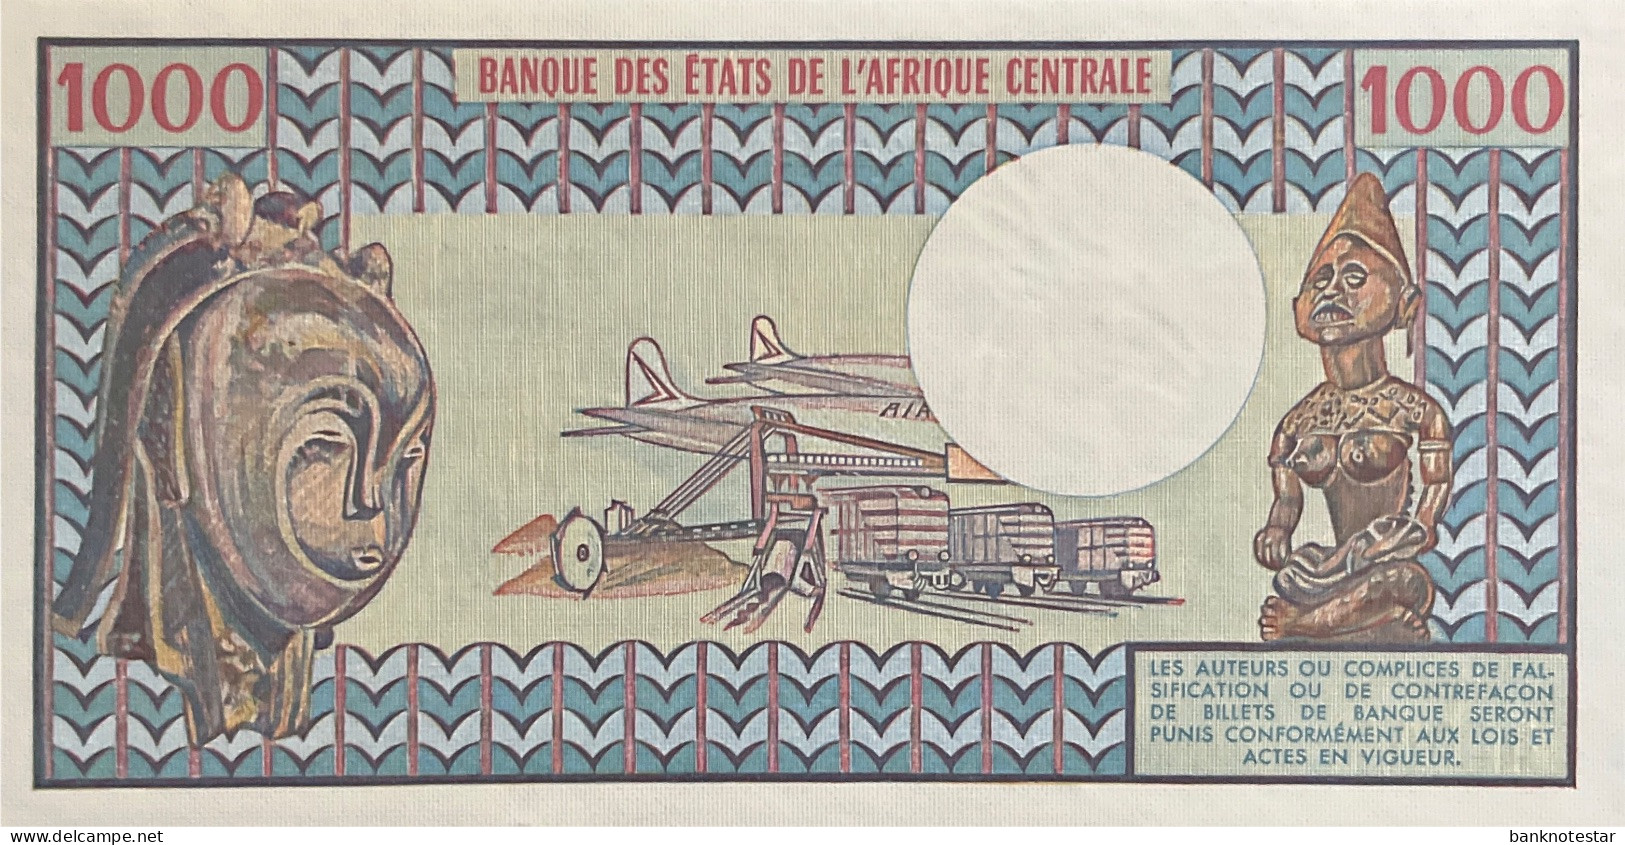 Gabon 1.000 Francs, P-3c (1978) - UNC - RARE - Gabon